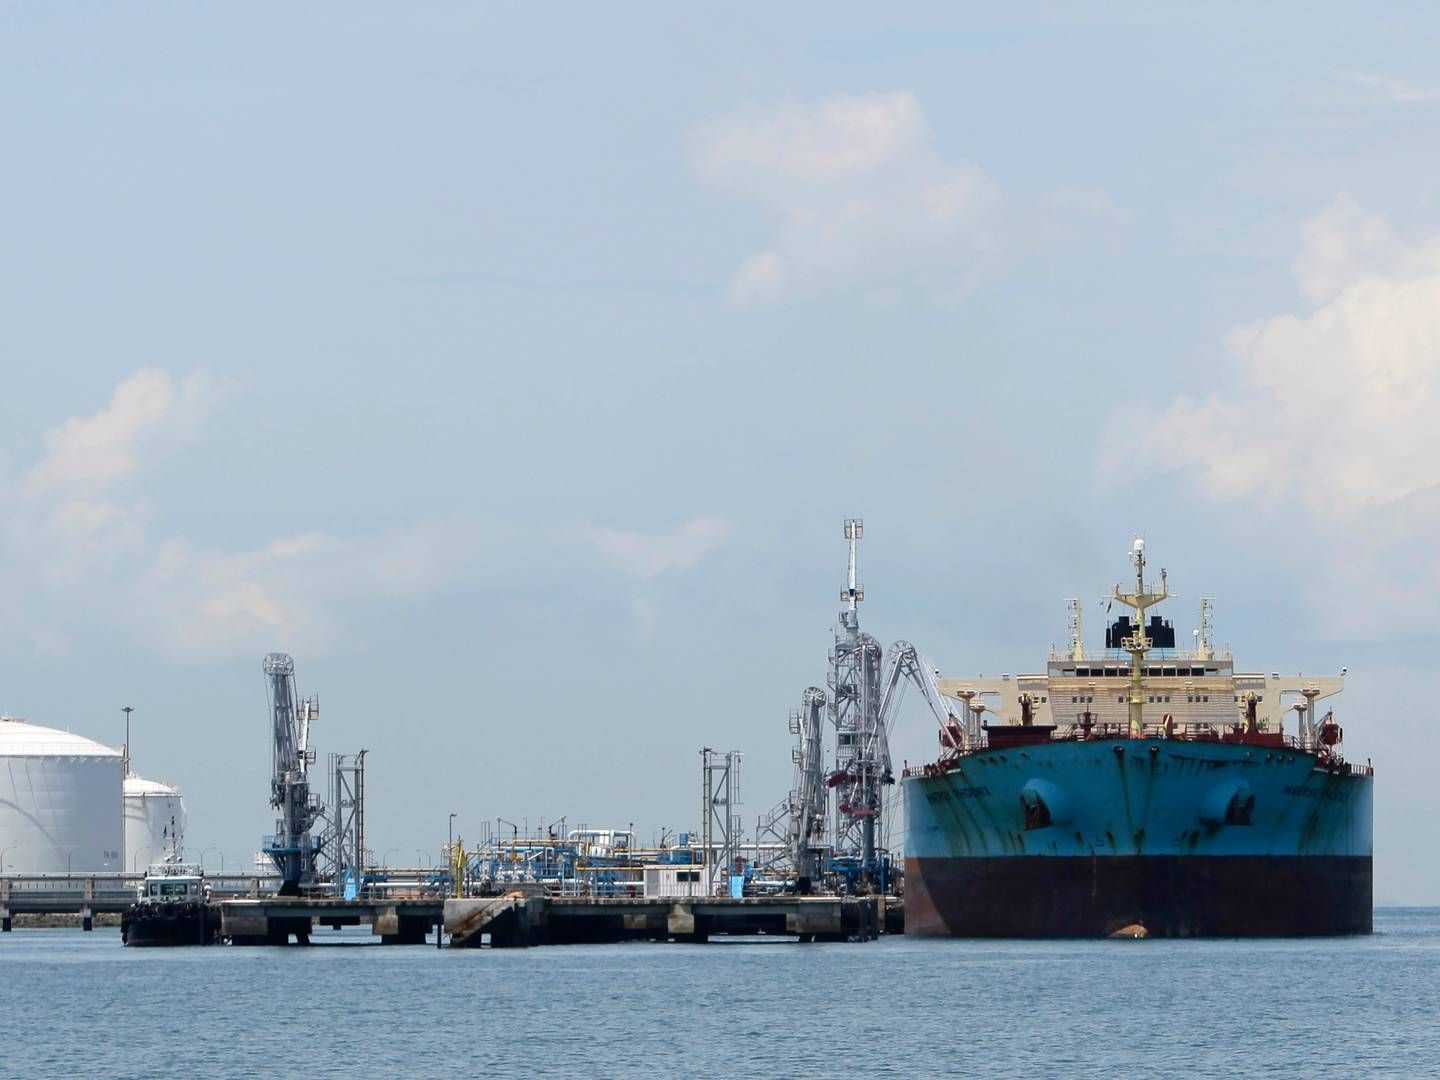 En forenkling af organisationen har kostet 14 chefer jobbet i Maersk Tankers. | Foto: Tim Chong/Reuters/Ritzau Scanpix